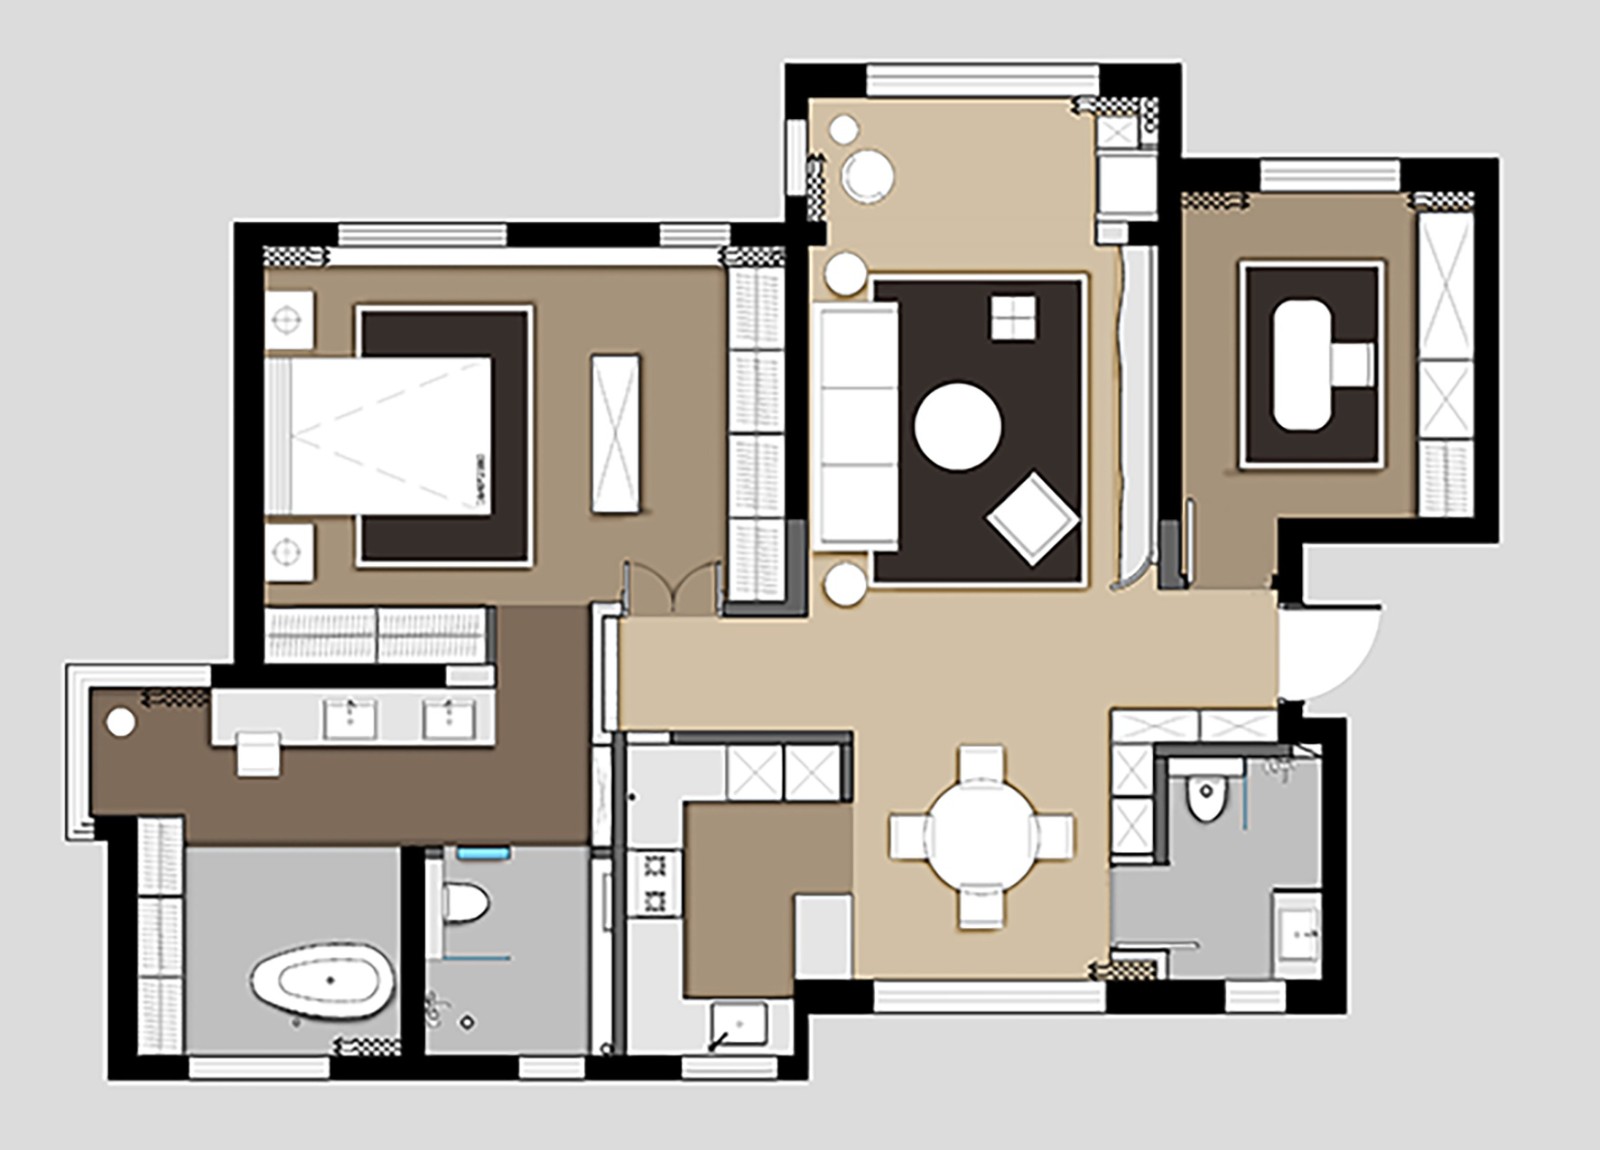 130现代三房装修效果图,轻松愉悦居家装修案例效果图-美广网